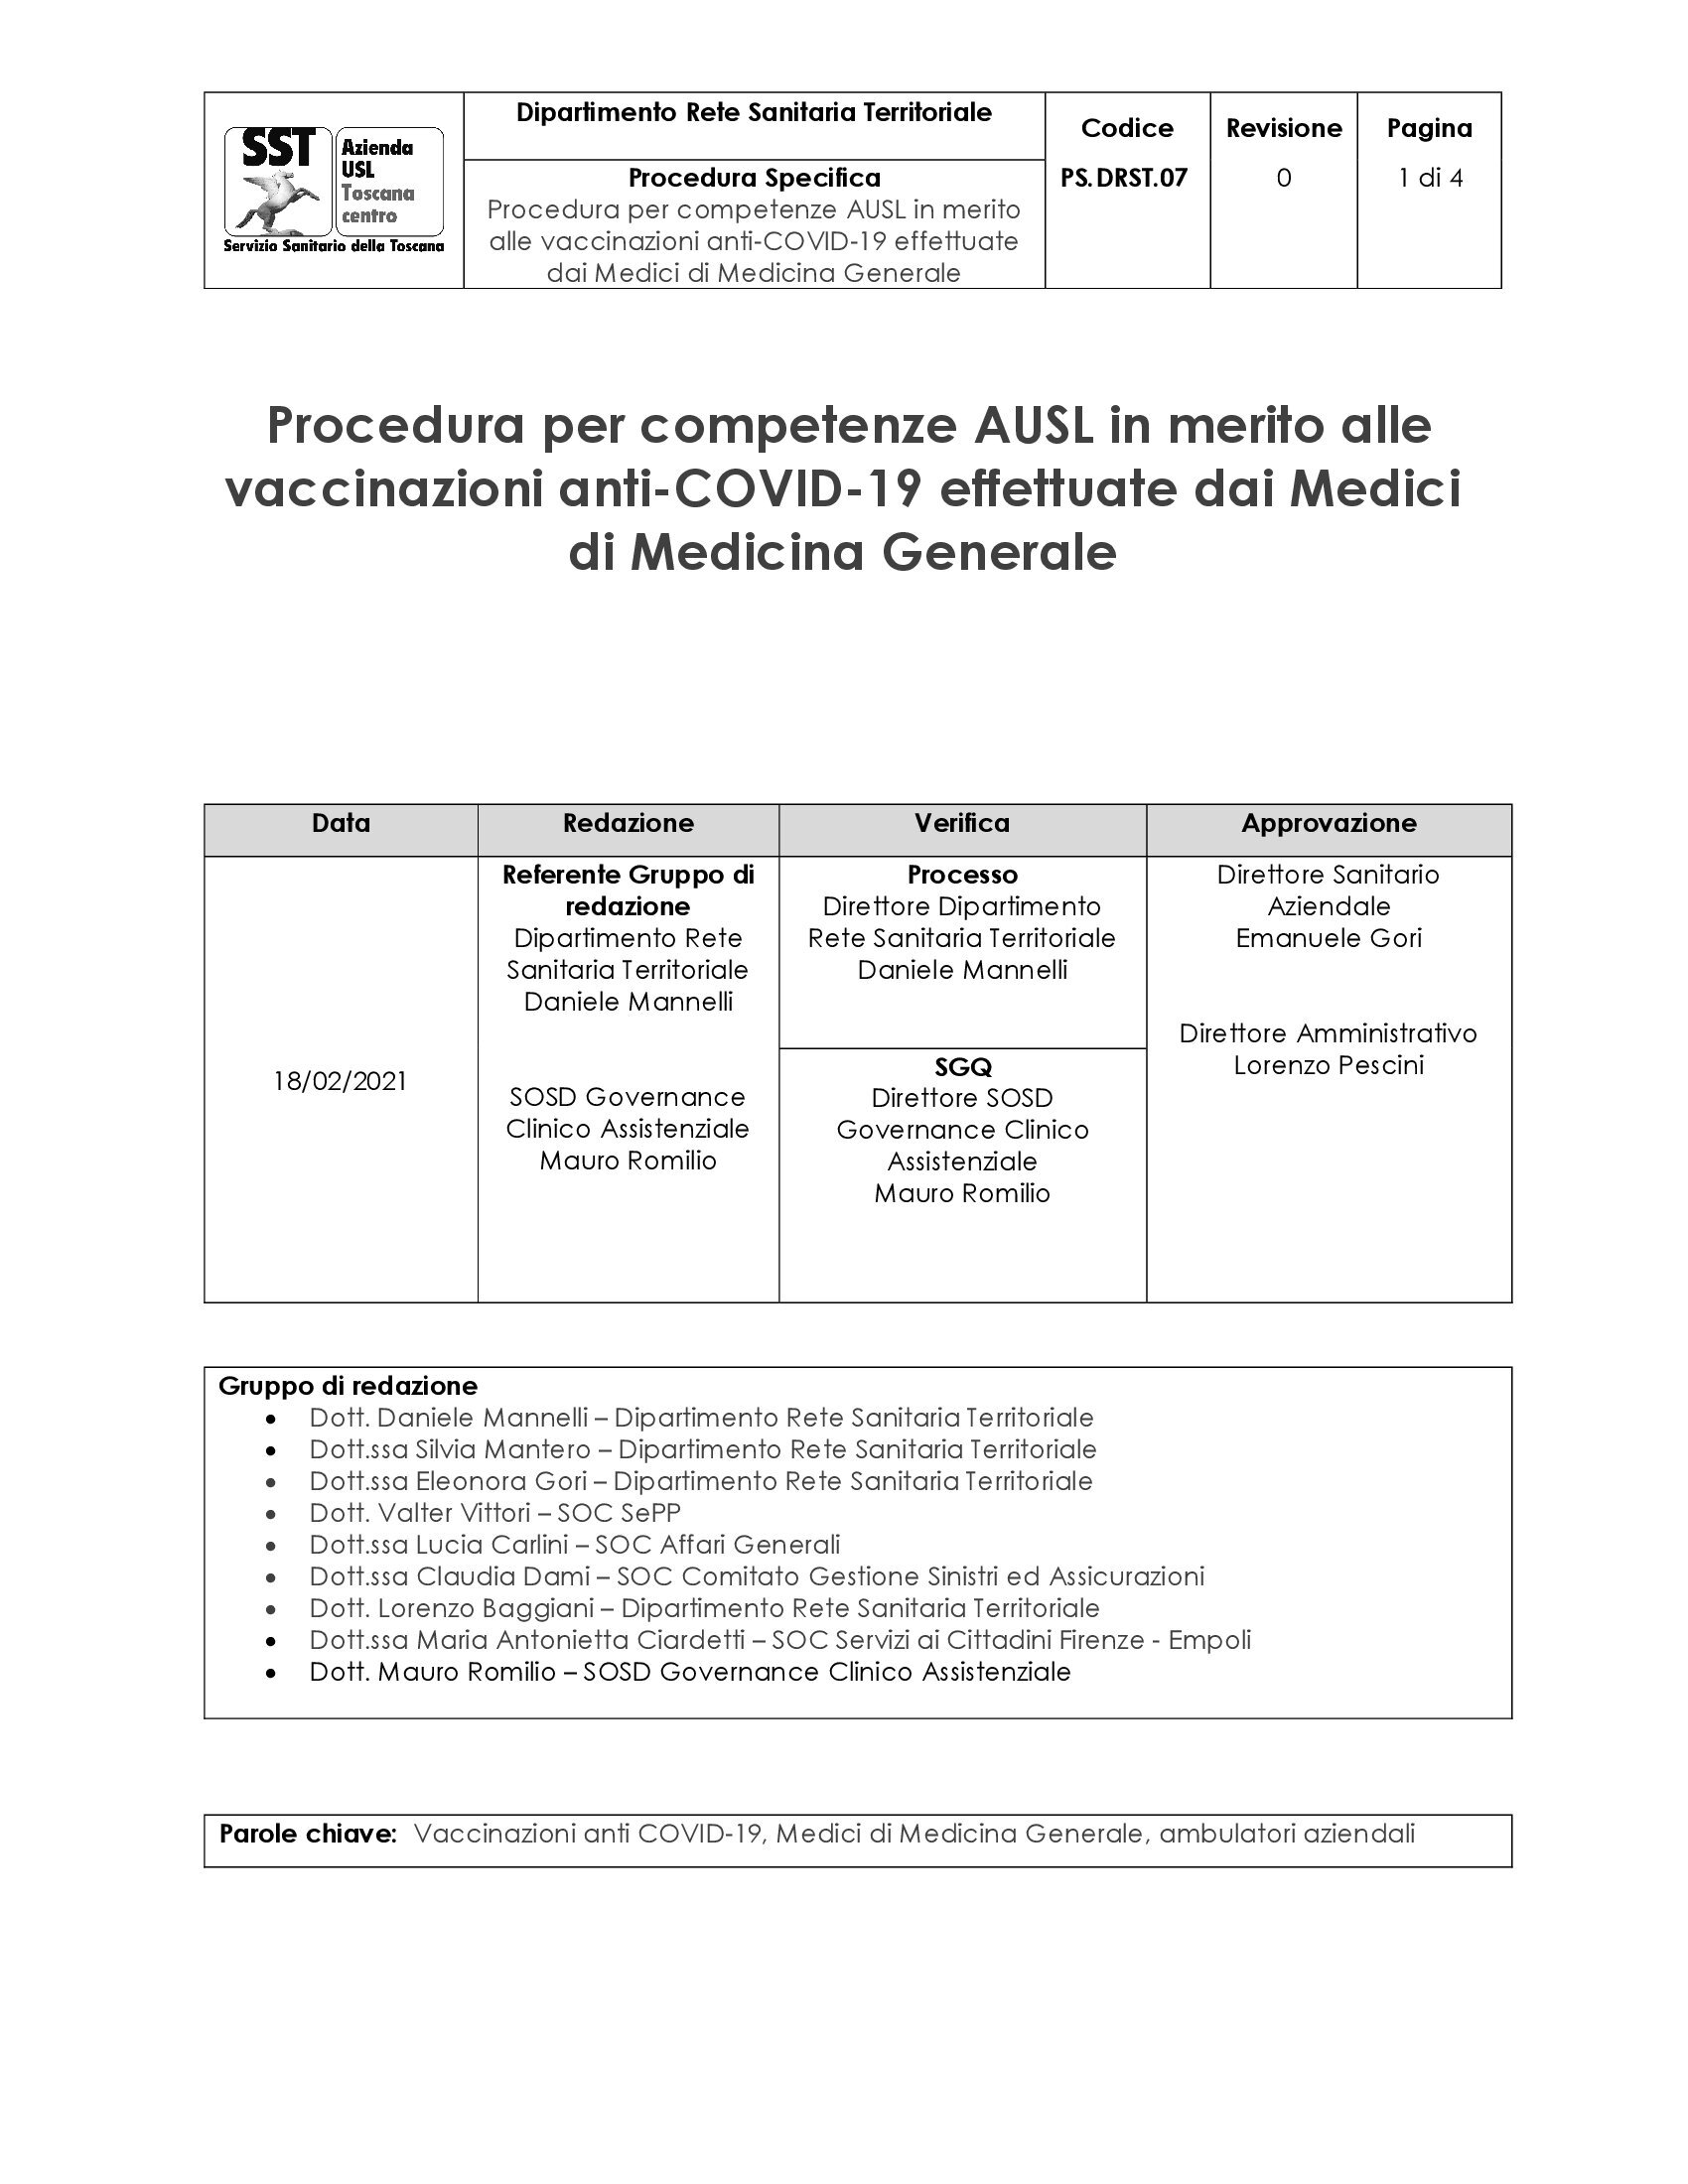 PS.DRST.07 Procedura per competenze AUSL in merito alle vaccinazioni anti-COVID-19 effettuate dai Medici di Medicina Generale